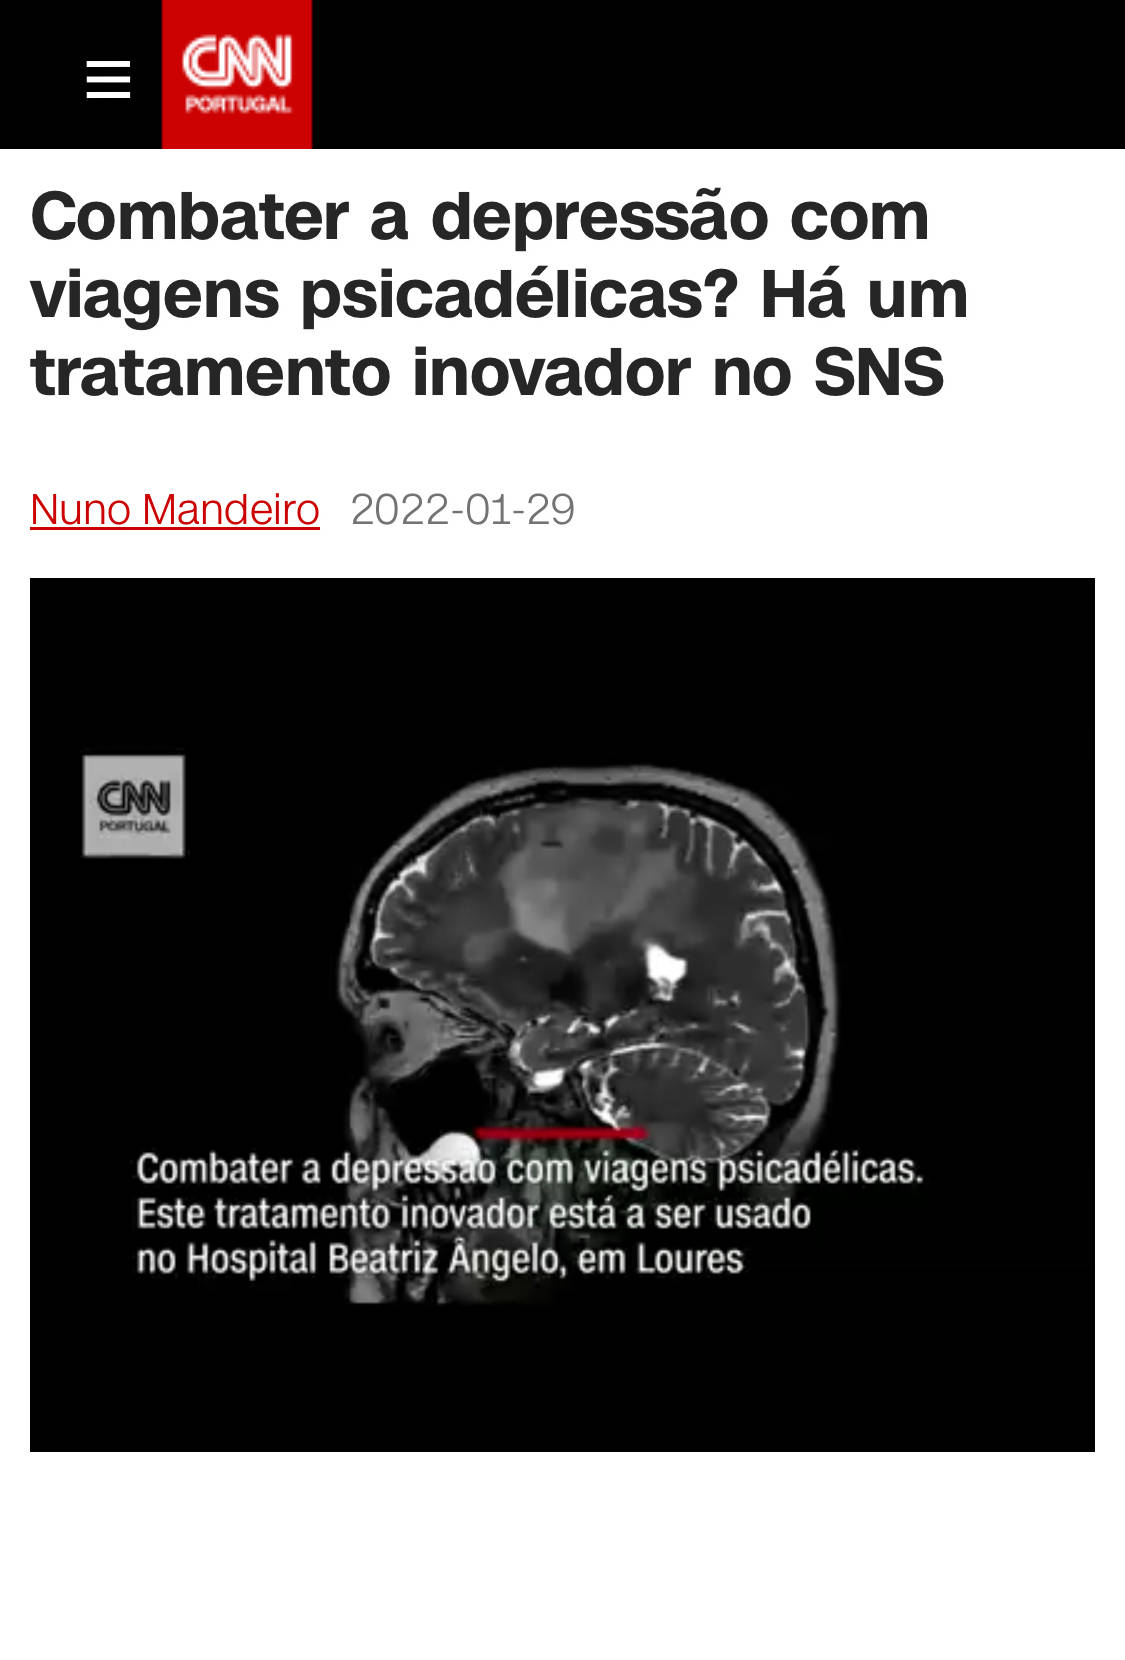 CNN Hospital Beatriz Ângelo Cetamina - tratamento para depressão